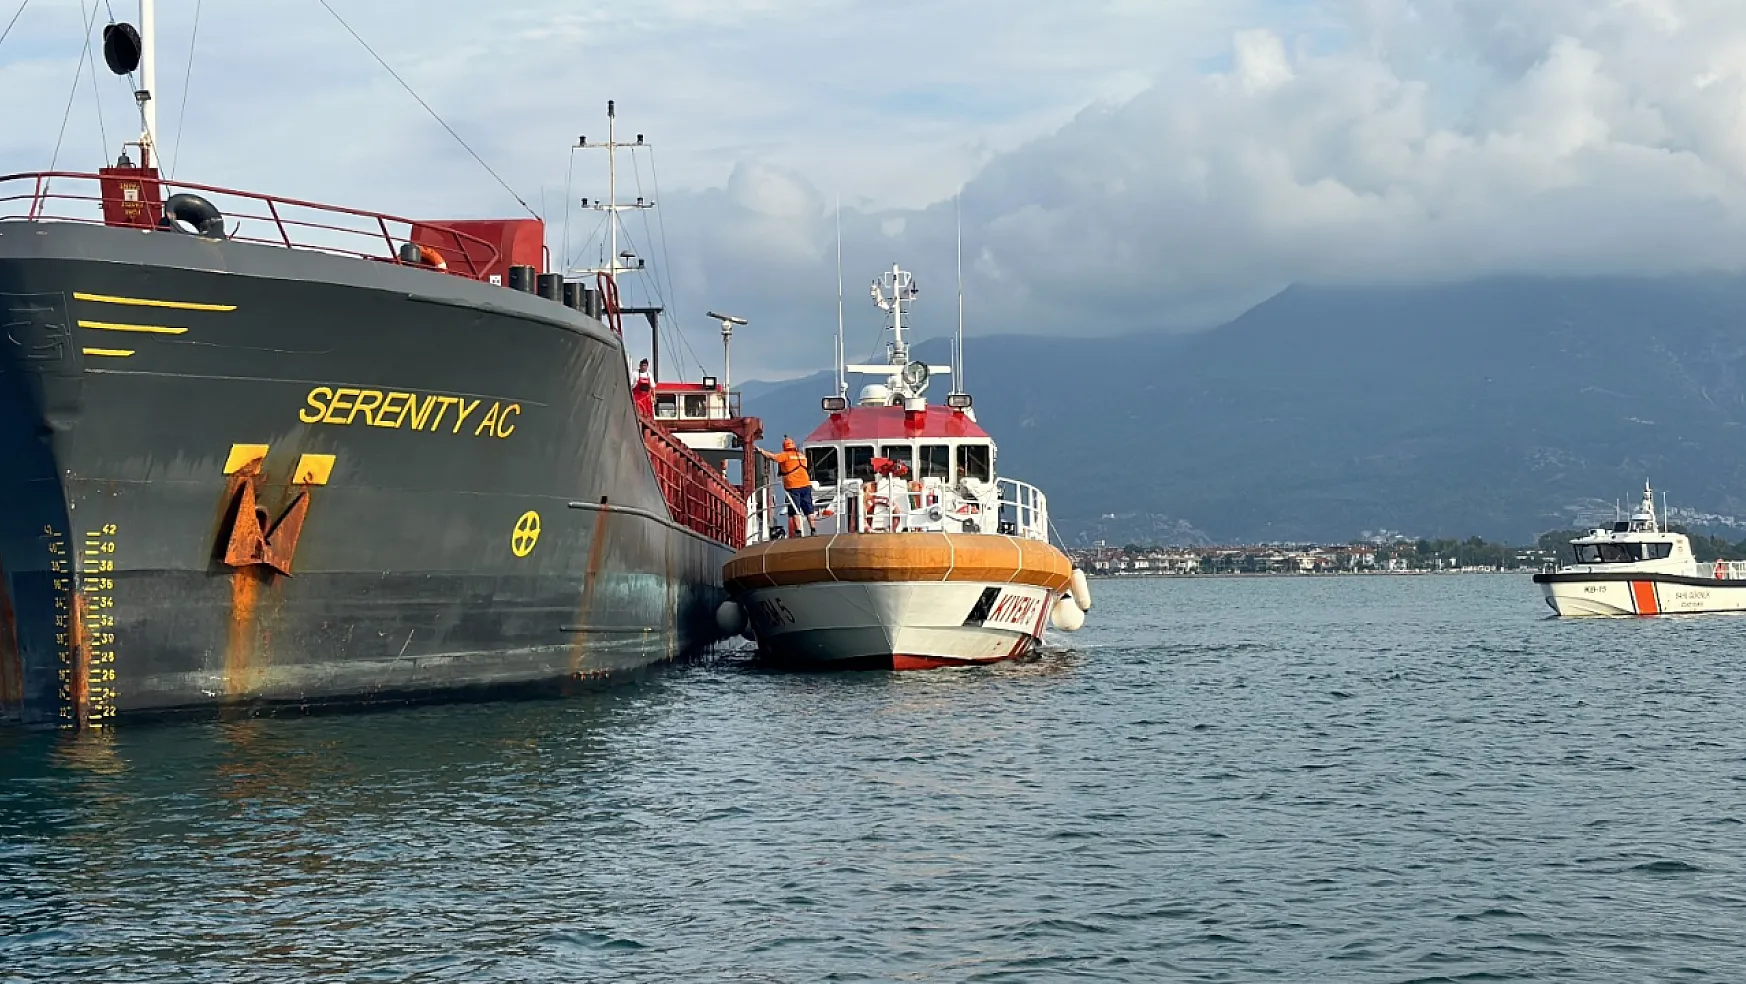 Fethiye'de yük gemisinde patlama oldu! 4 kişi yaralandı